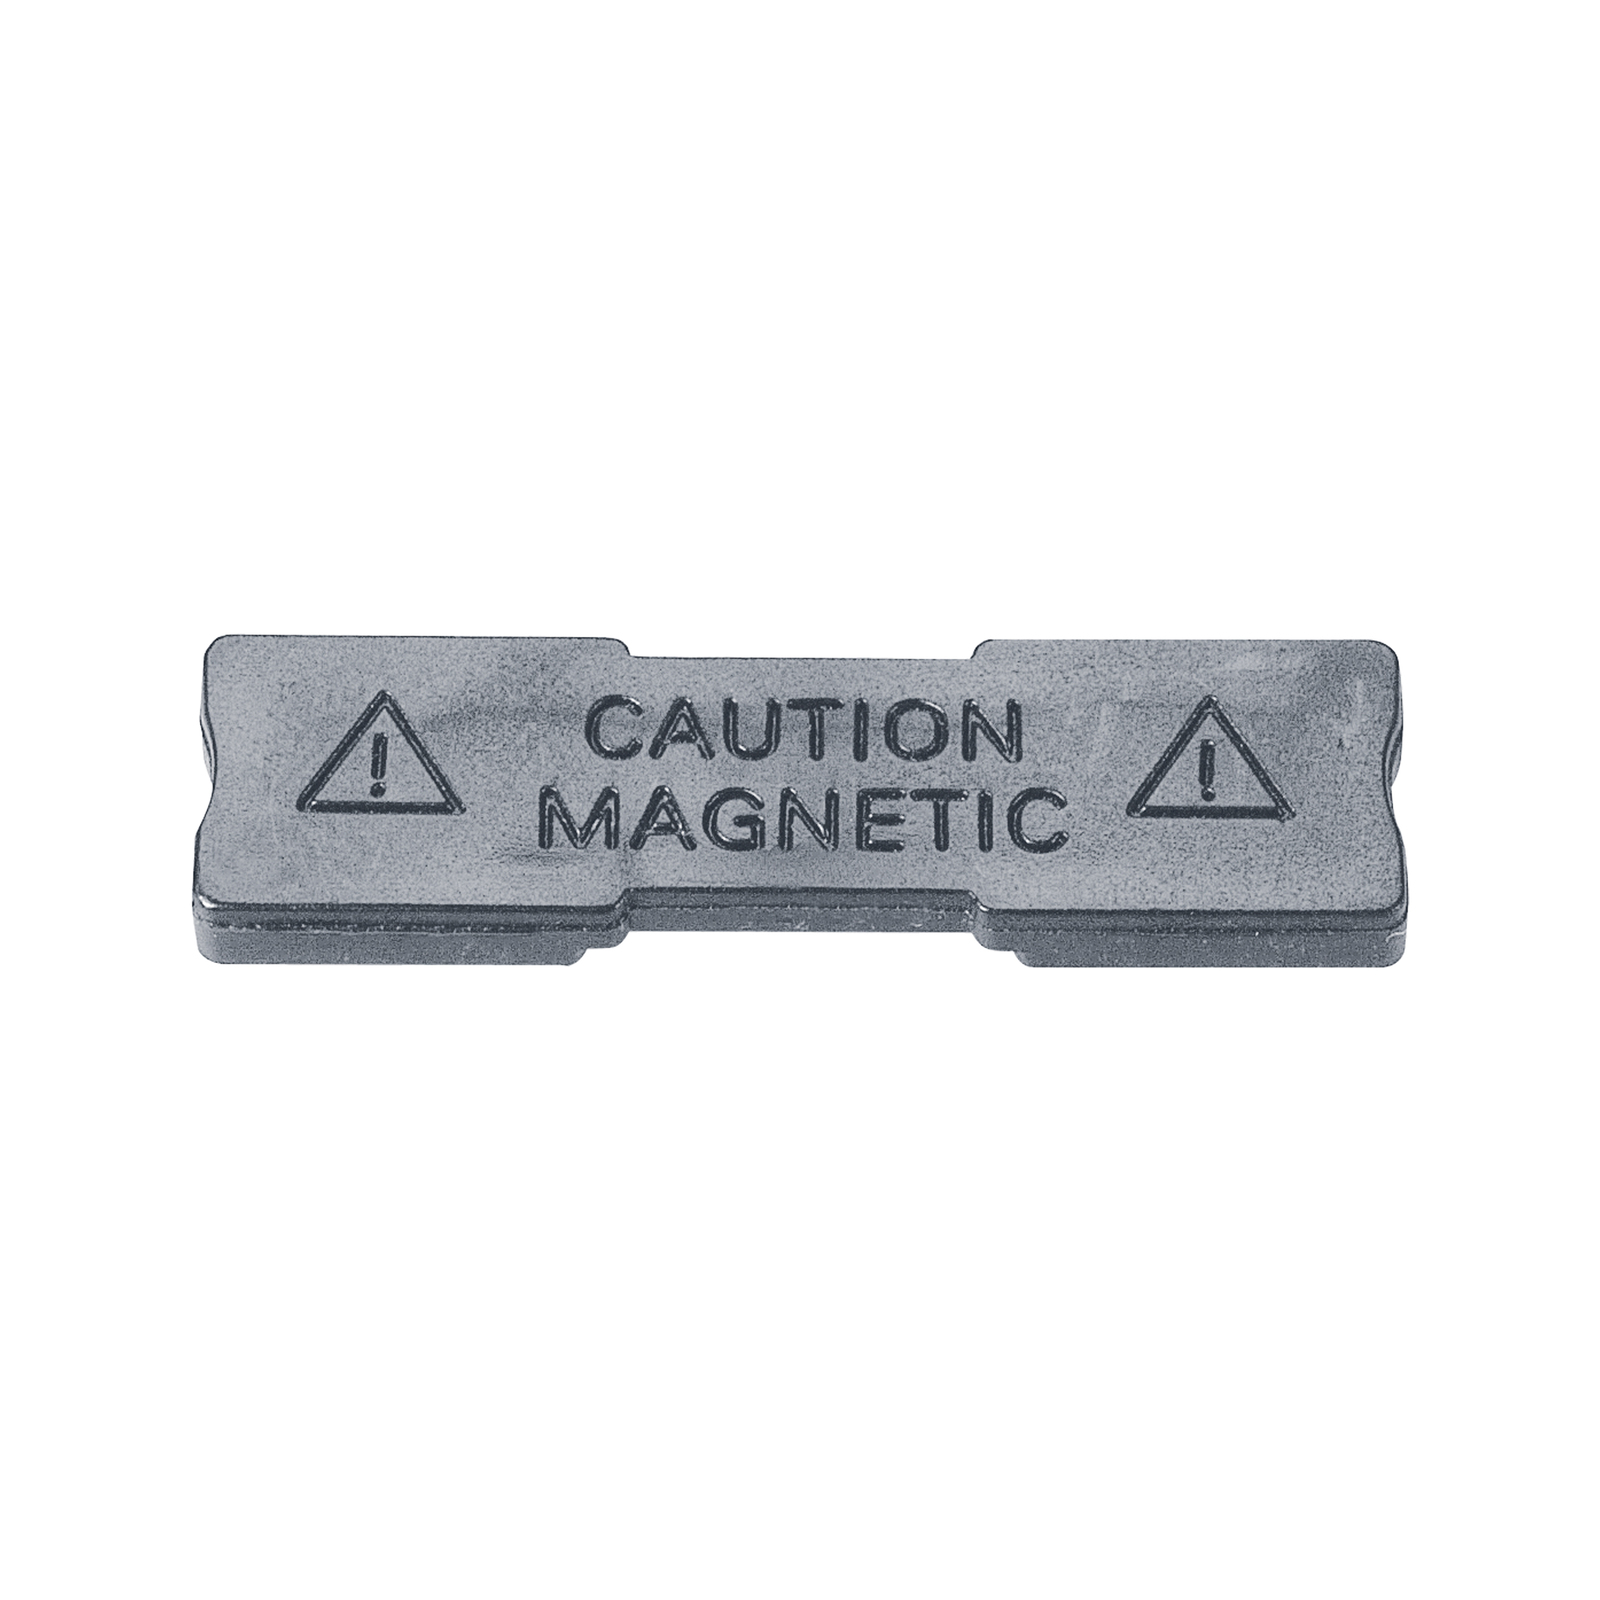 Magnet extrem stark für Namensschilder 2-teilig im Online-Shop